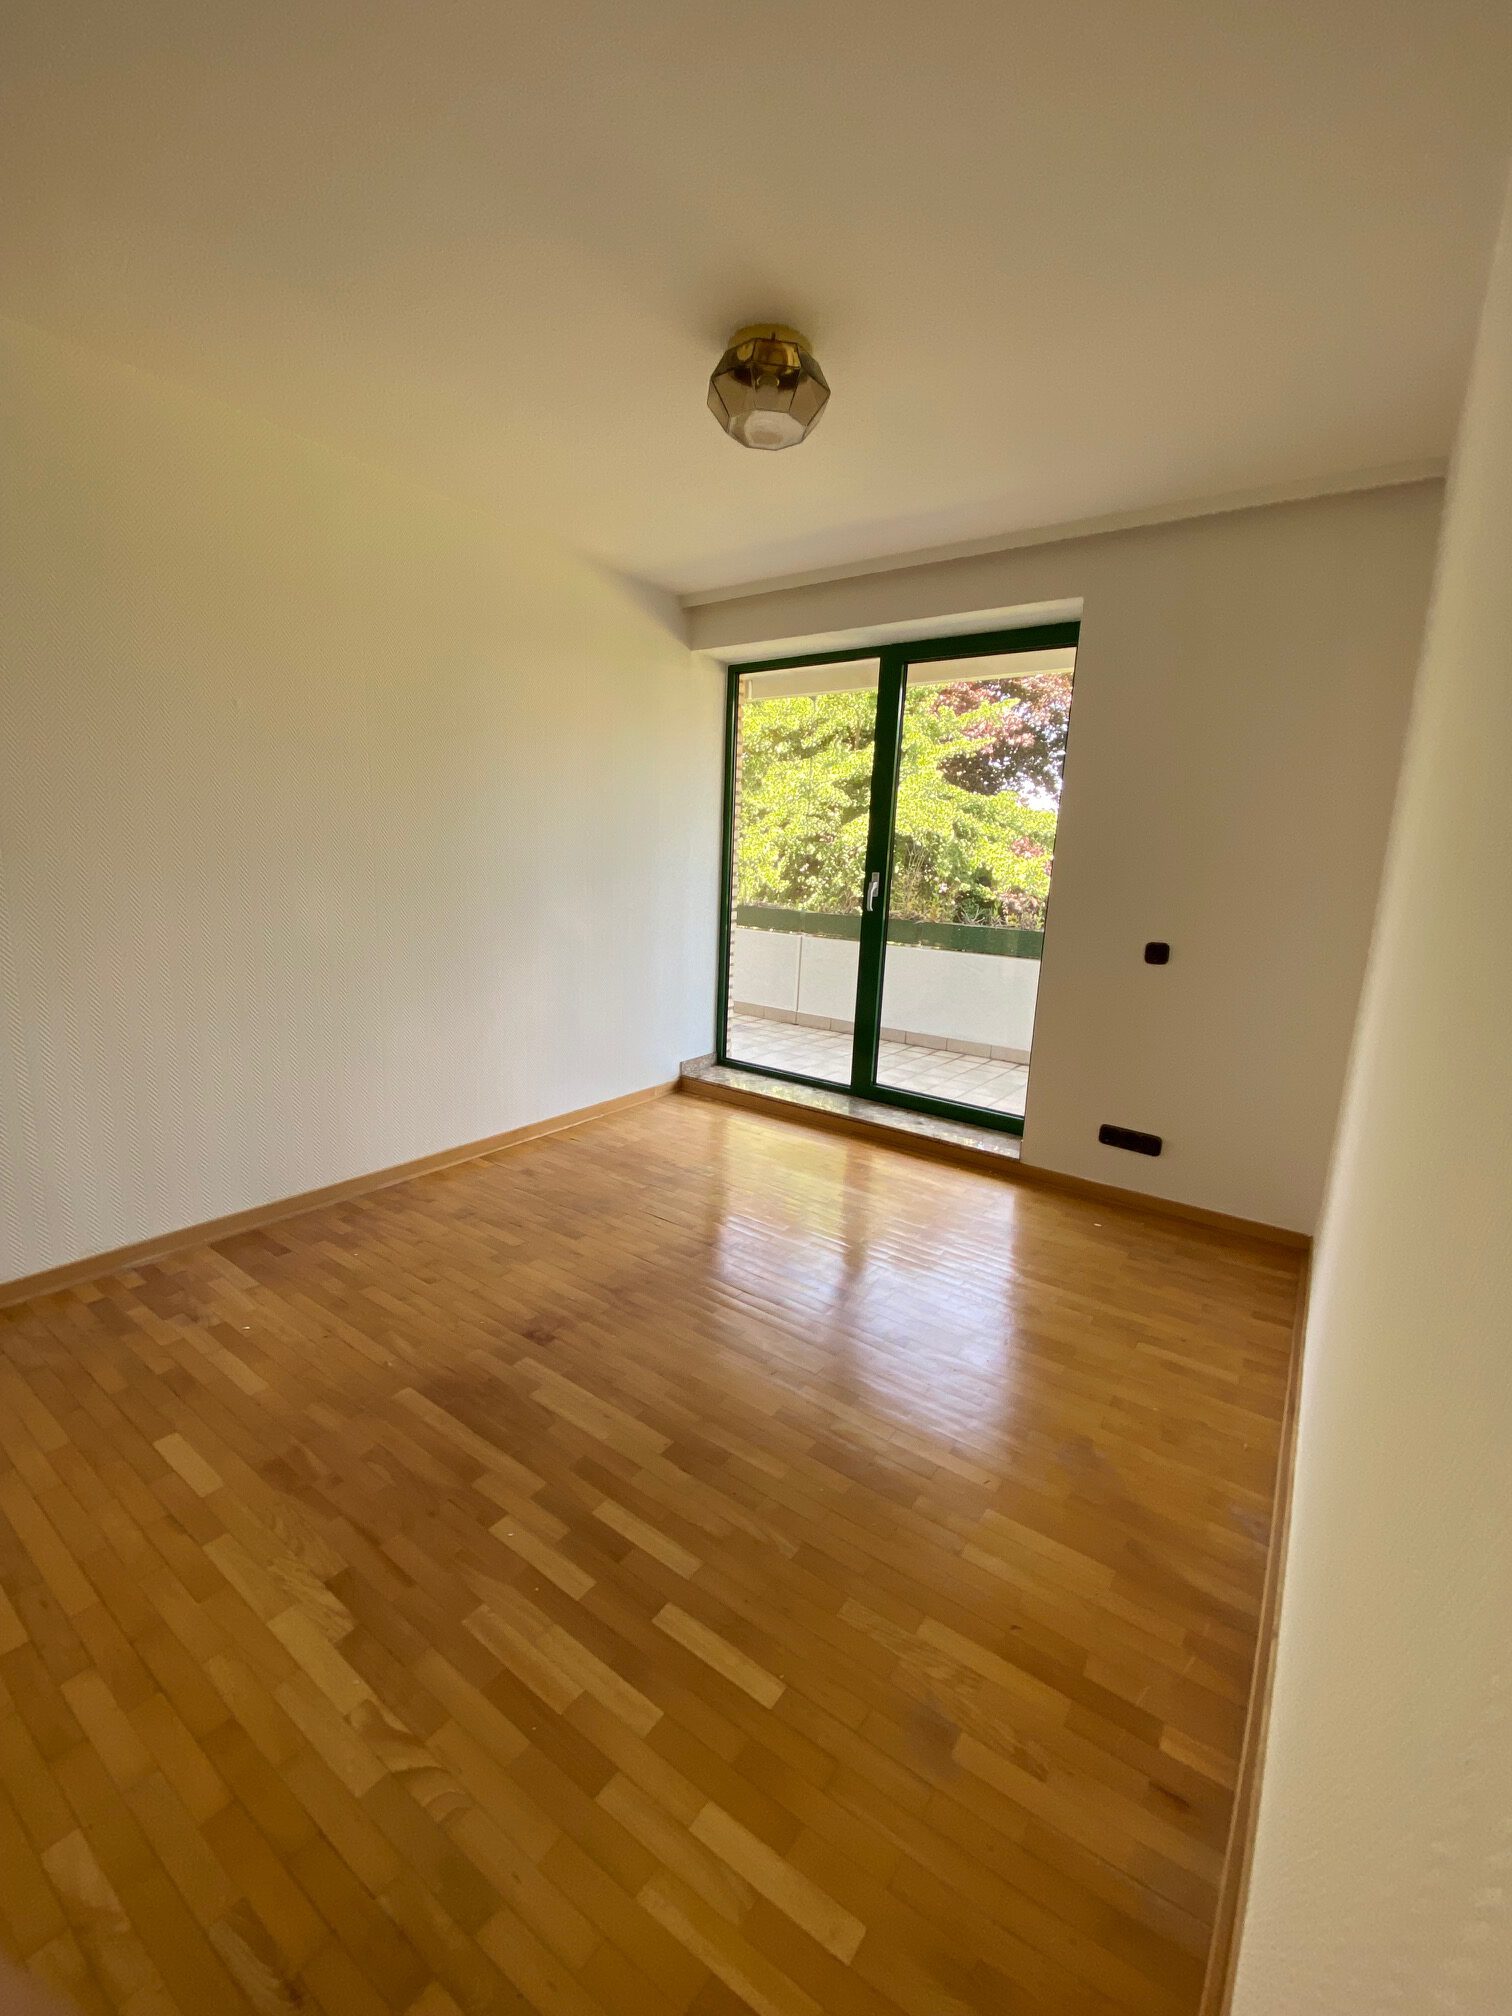 #516 Mehrfamilienhaus in attraktiver Lage Bad Salzuflens- Kaufpreis VB